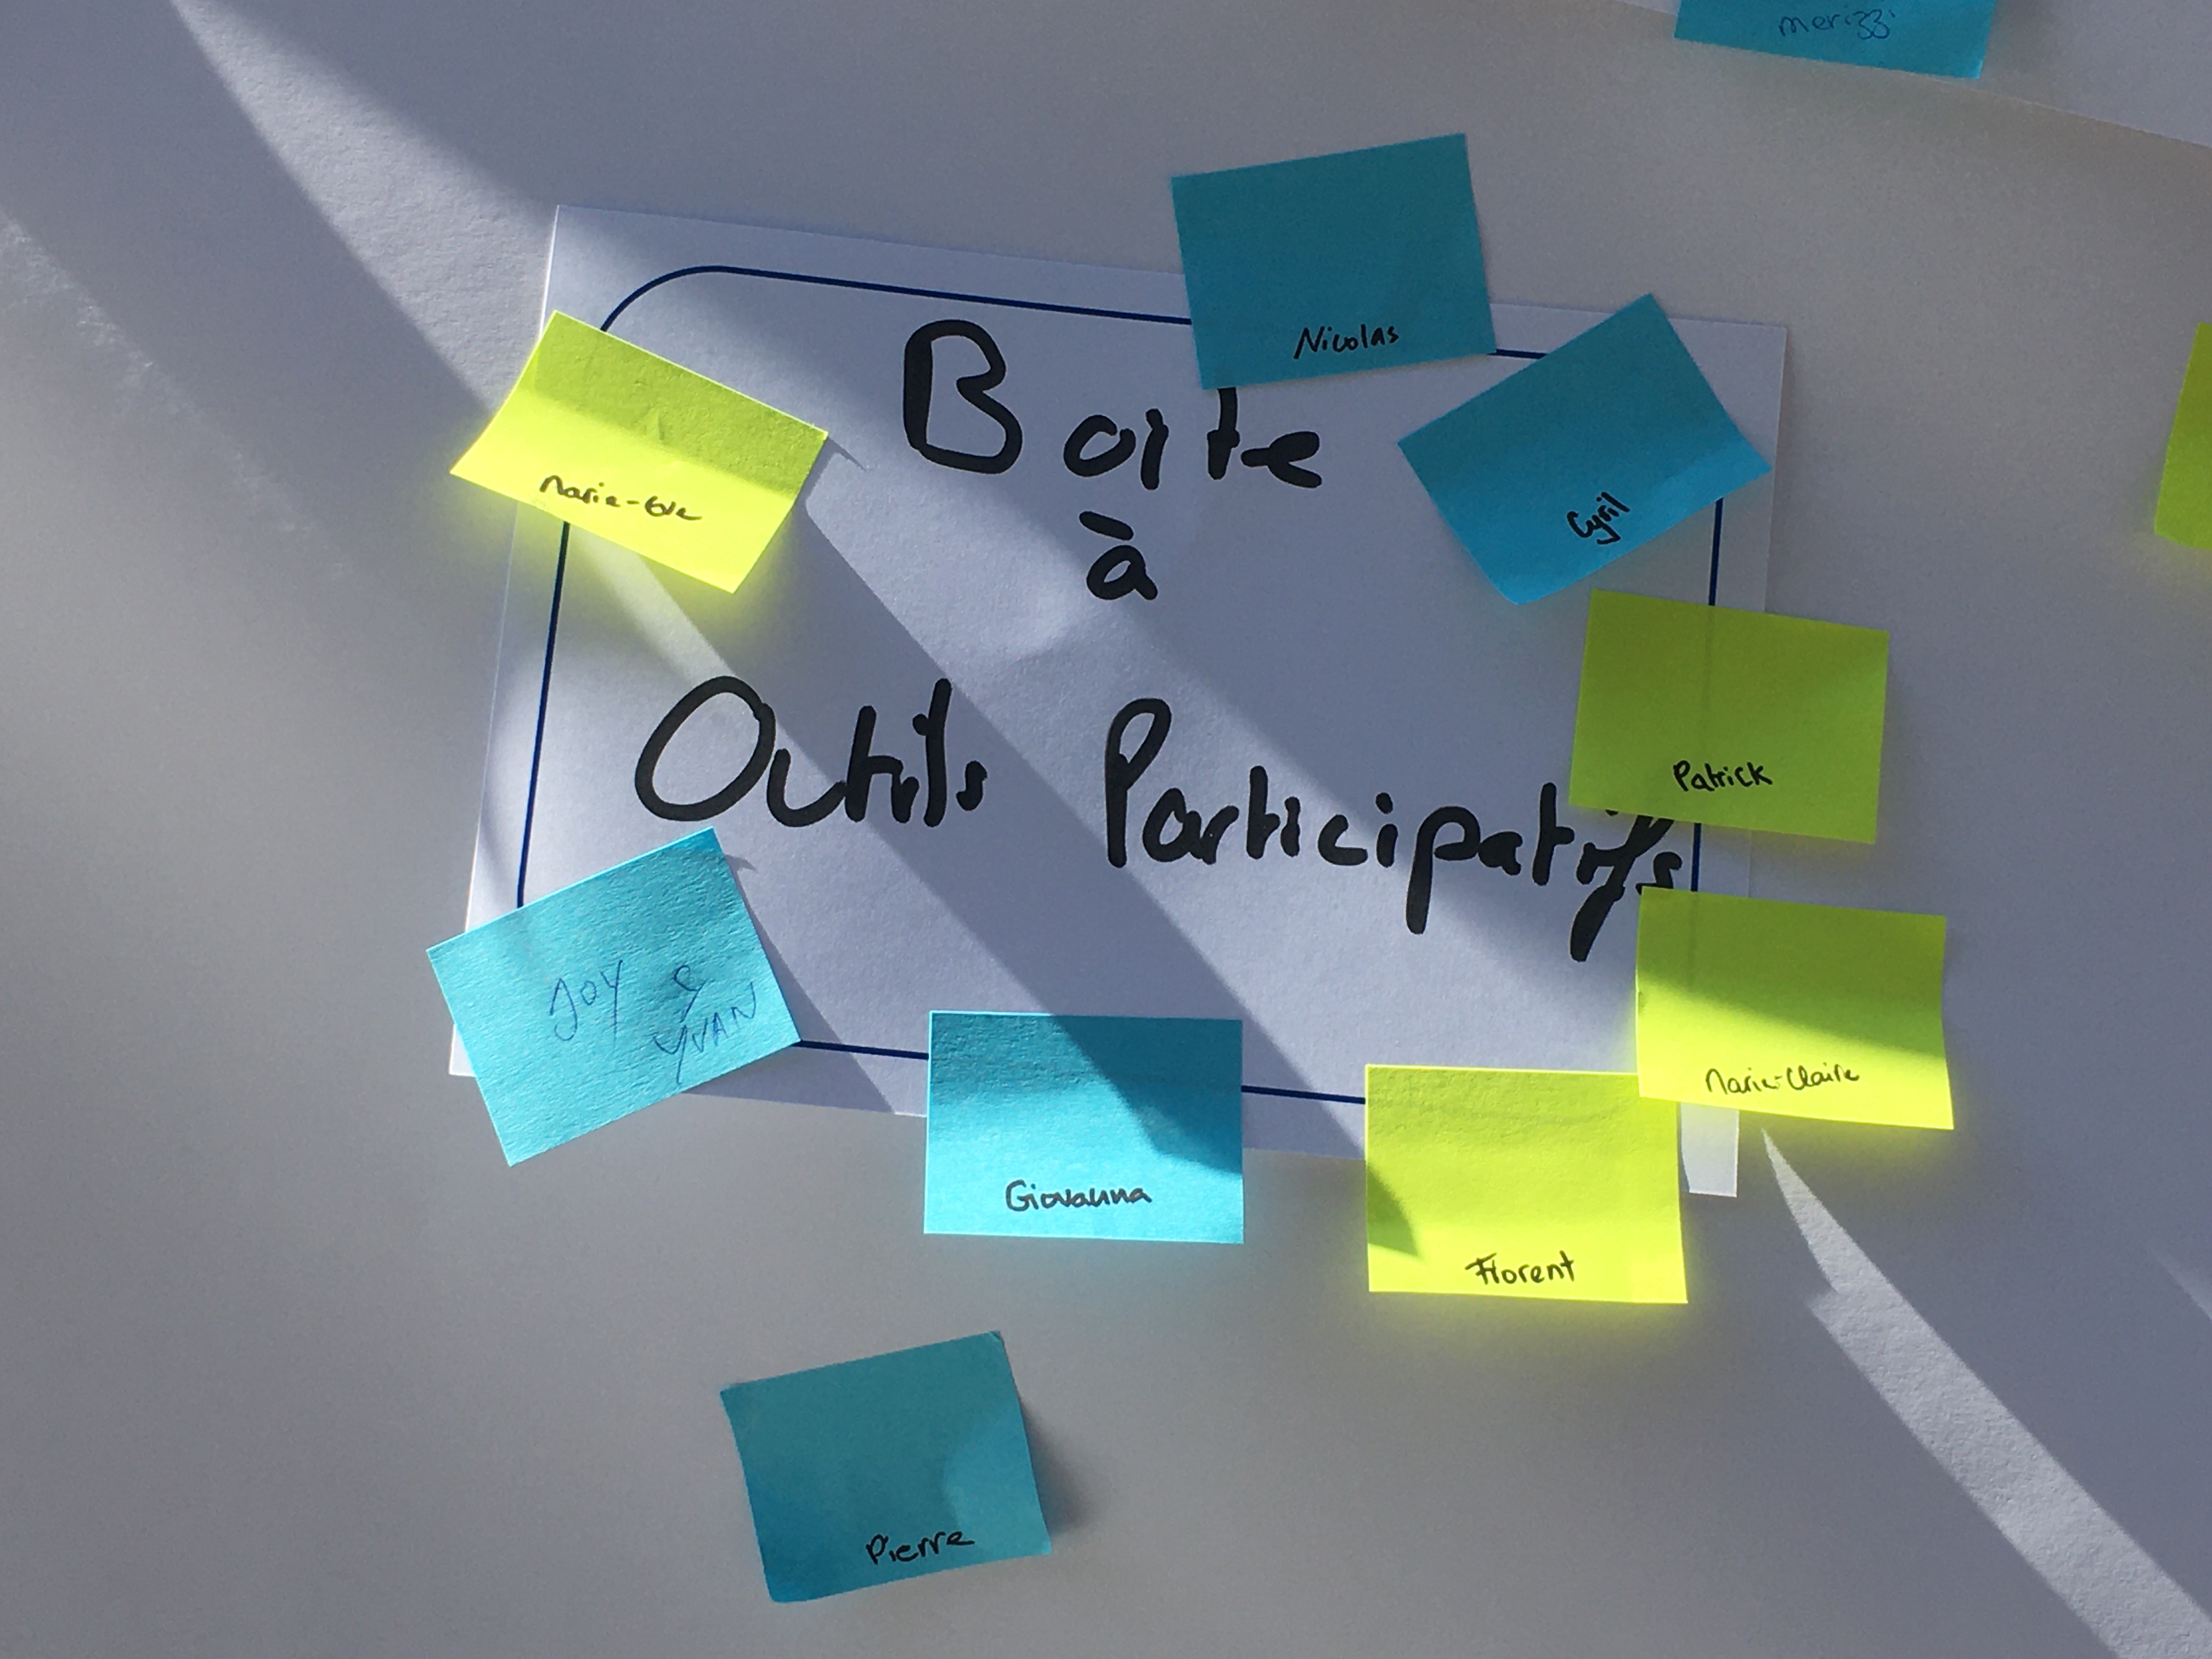 boite à outils participatifs